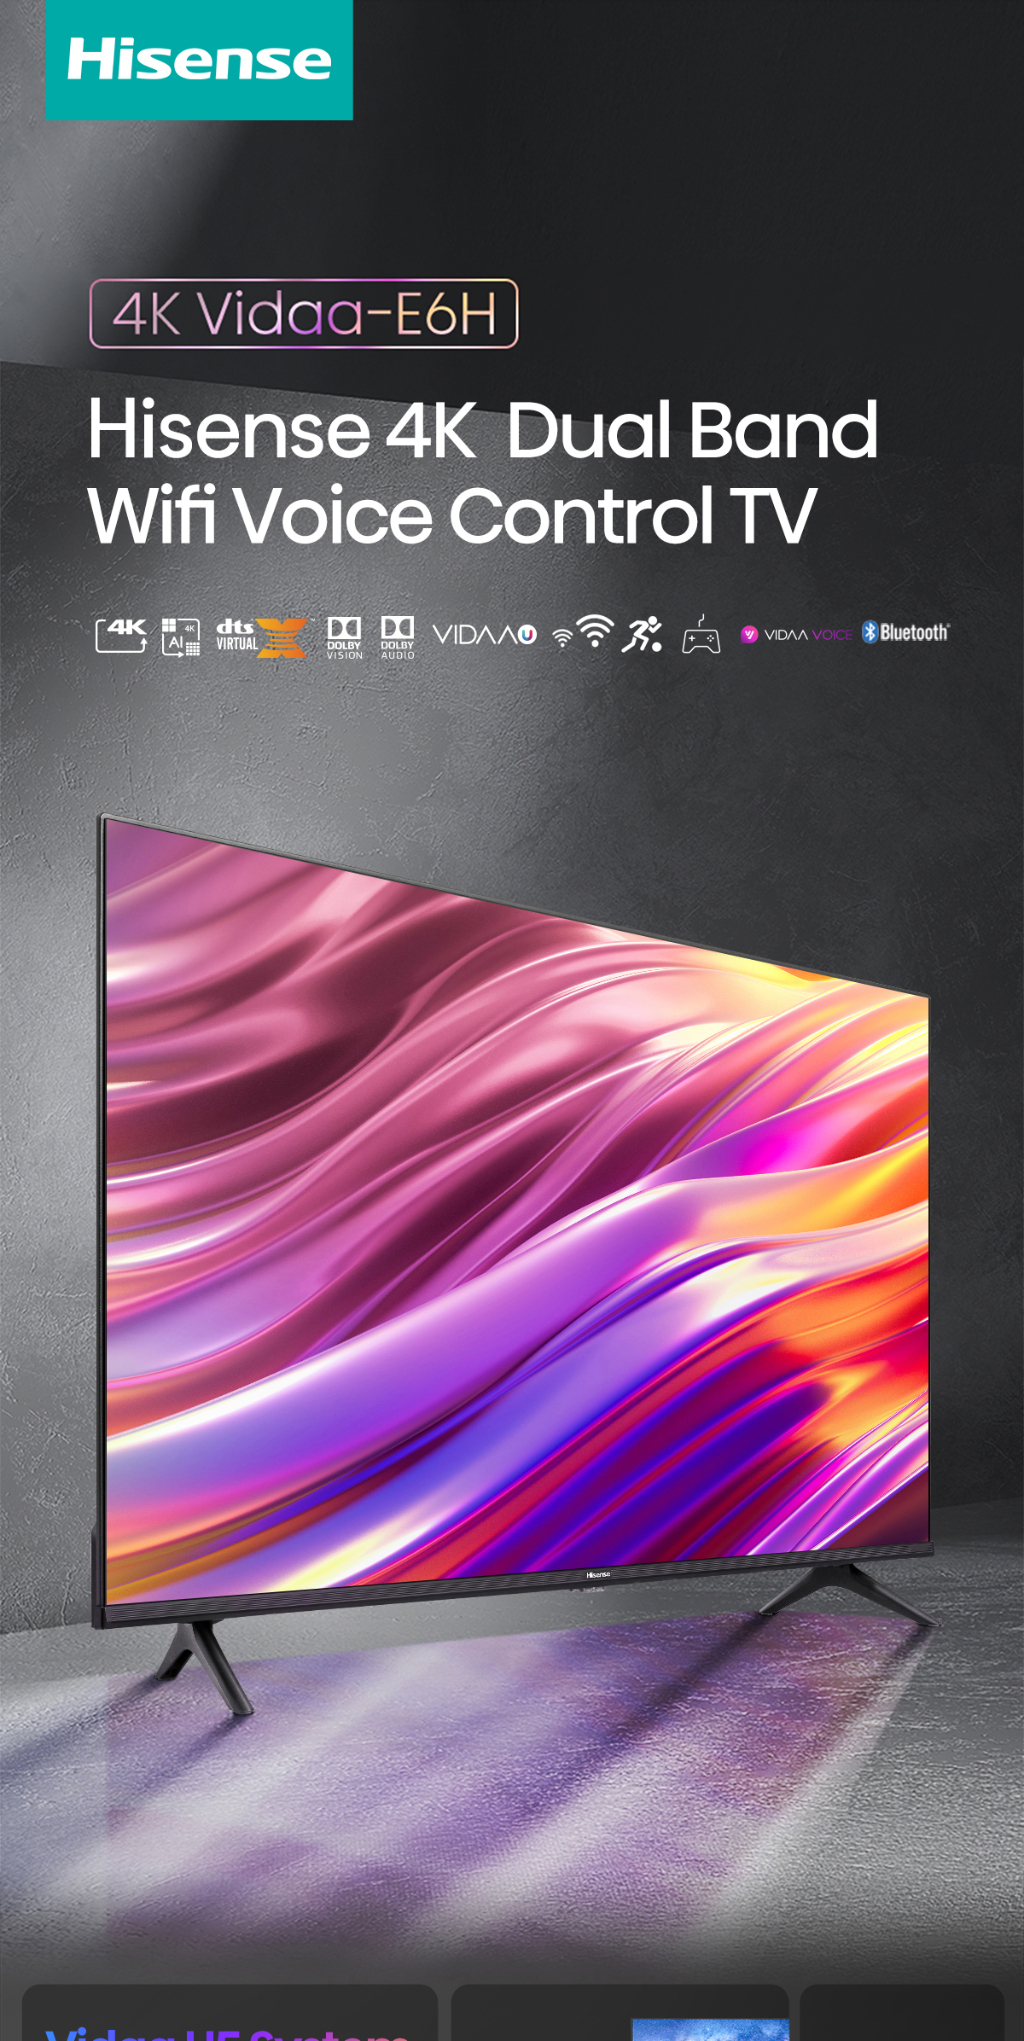 ข้อมูลเกี่ยวกับ Hisense TV ทีวี 55 นิ้ว 4K Ultra HD Smart TV รุ่น 55E6H VIDAA U5 Voice Control Dolby Vision Netflix YouTube 2.4G+5G WIFI Build in /DVB-T2 / USB2.0 / HDMI /AV